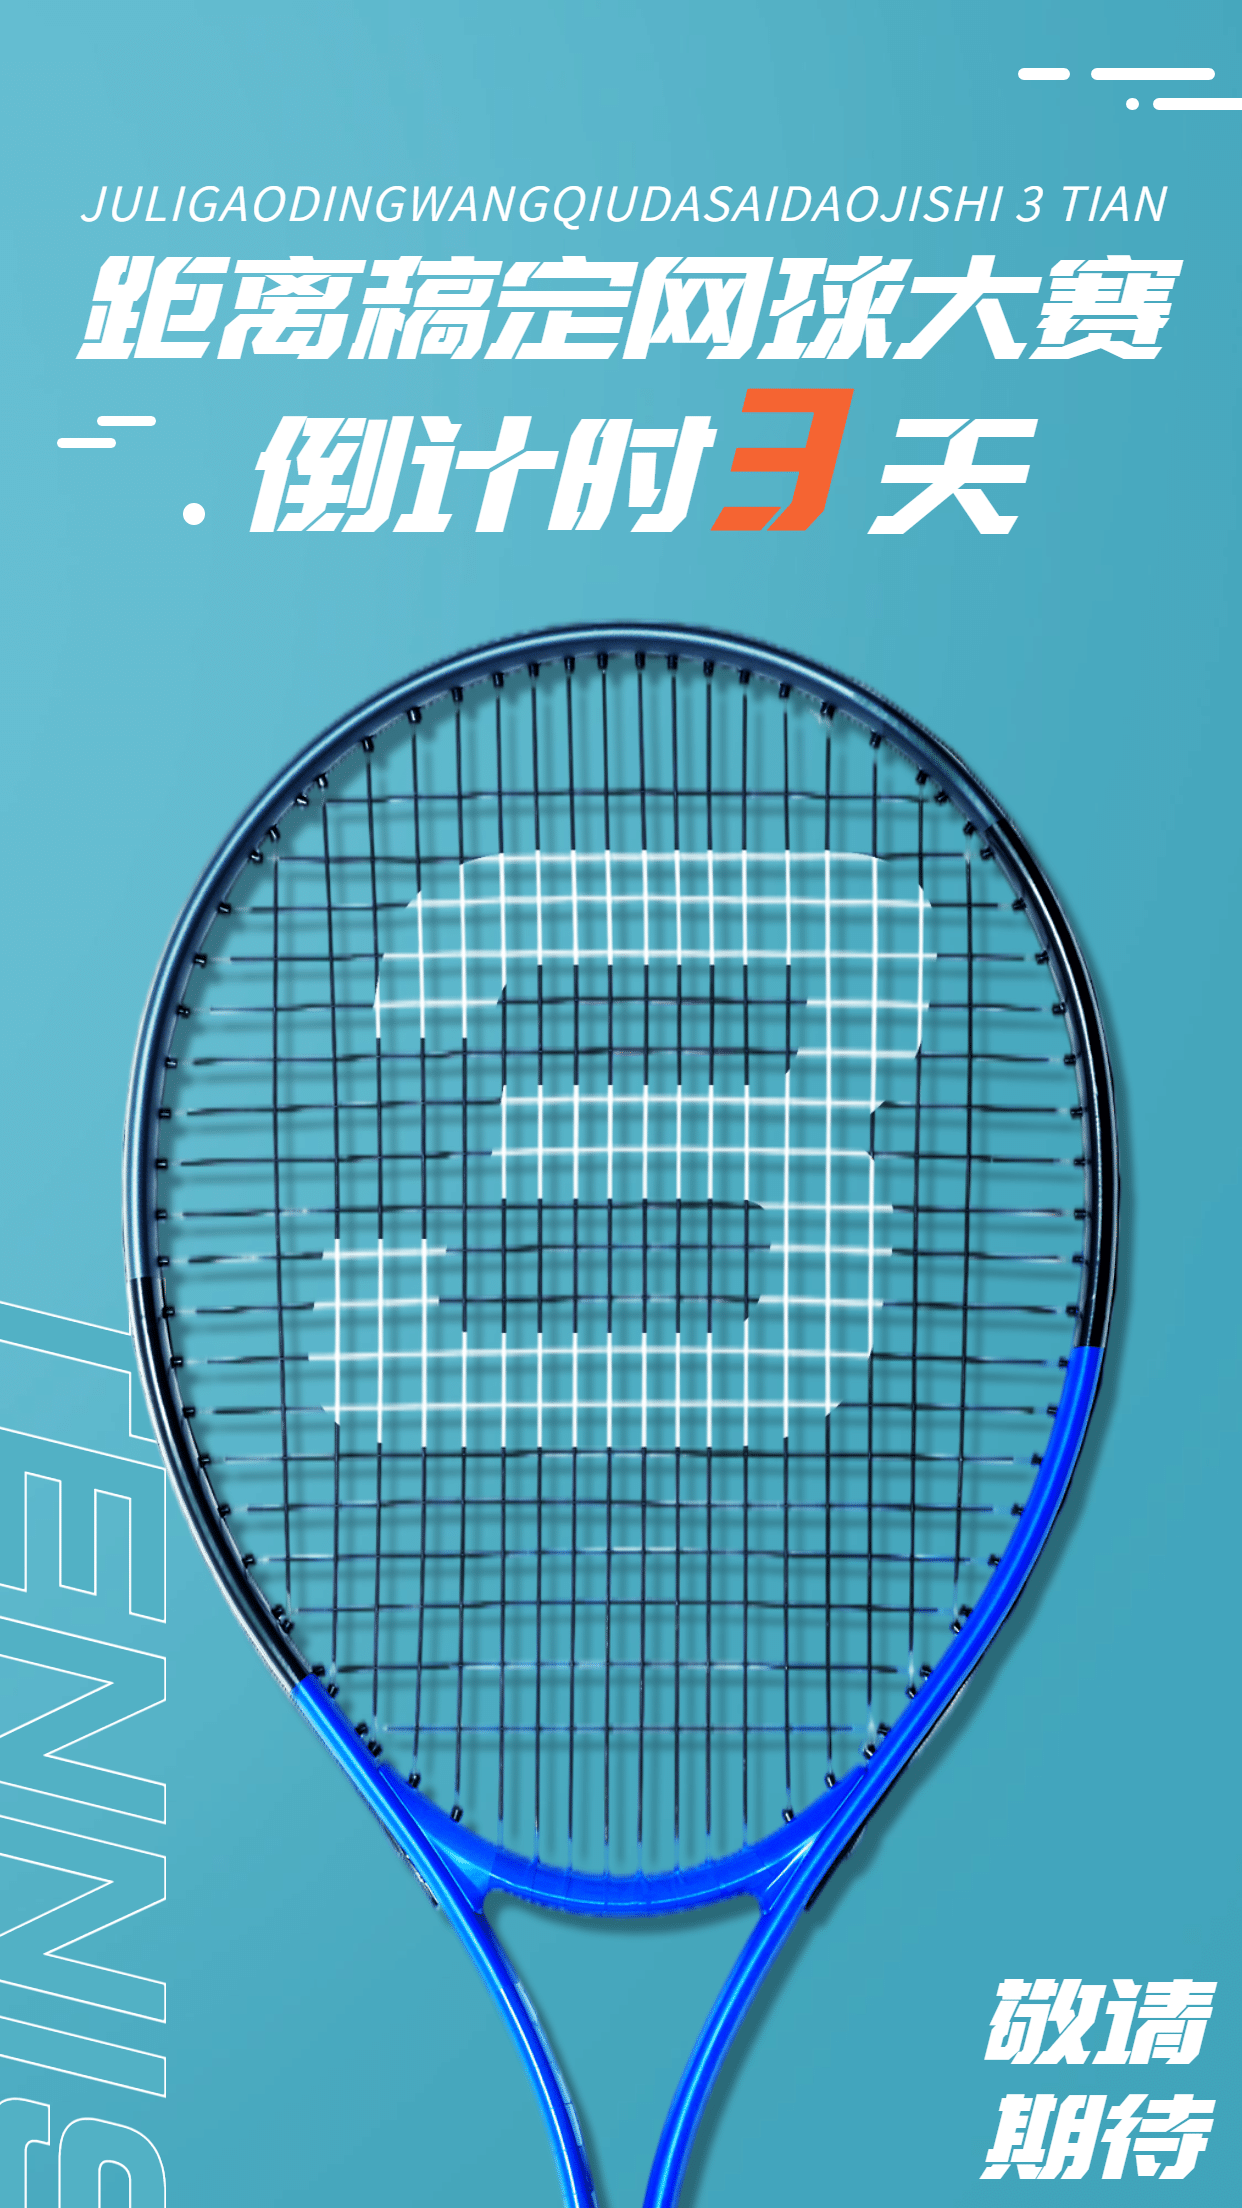 网球运动赛事倒计时宣传海报